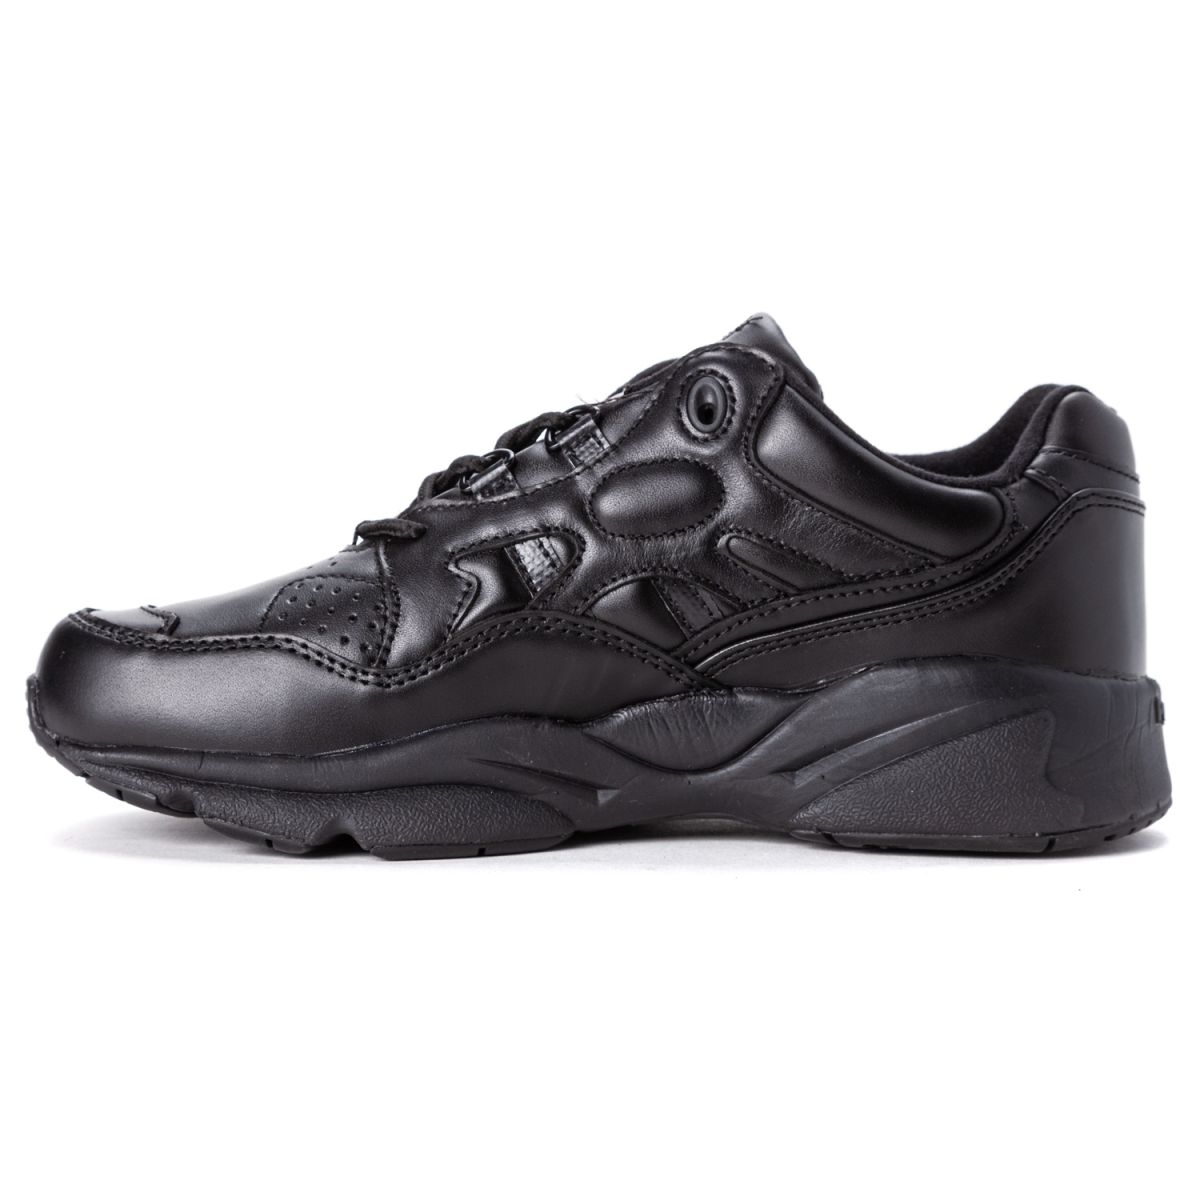 Propet Women's Stability Walker Sneaker Black - W2034BLK BLACK - BLACK, 7.5 W (US Women's 7.5 D)